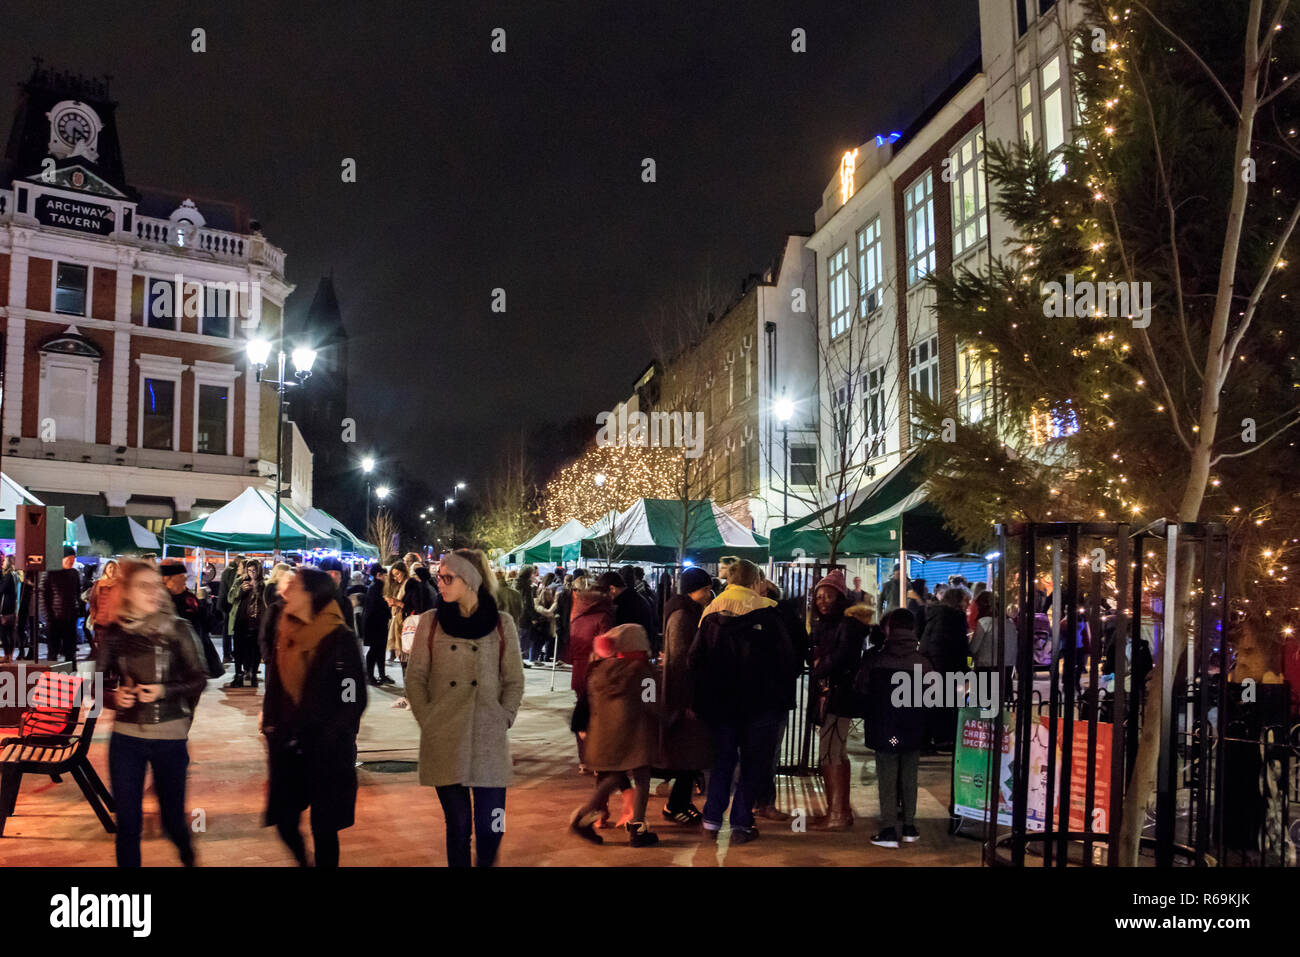 Notte tempo colpo di persone che passeggiano attraverso un mercato all'aperto illuminato con luci di Natale, Navigator Square, Archway, London, Regno Unito Foto Stock